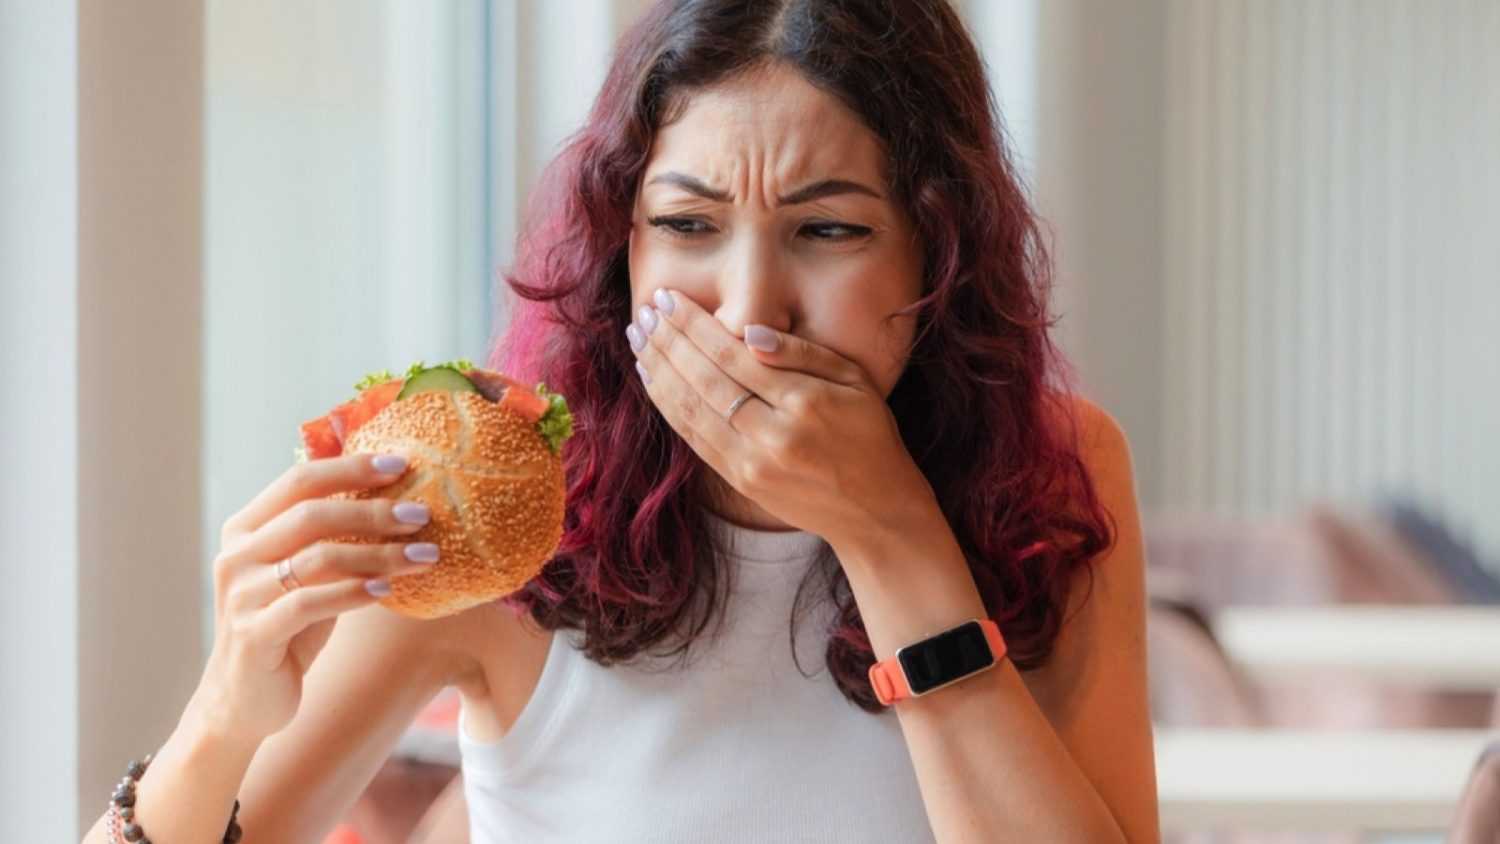 Woman tasting bad food